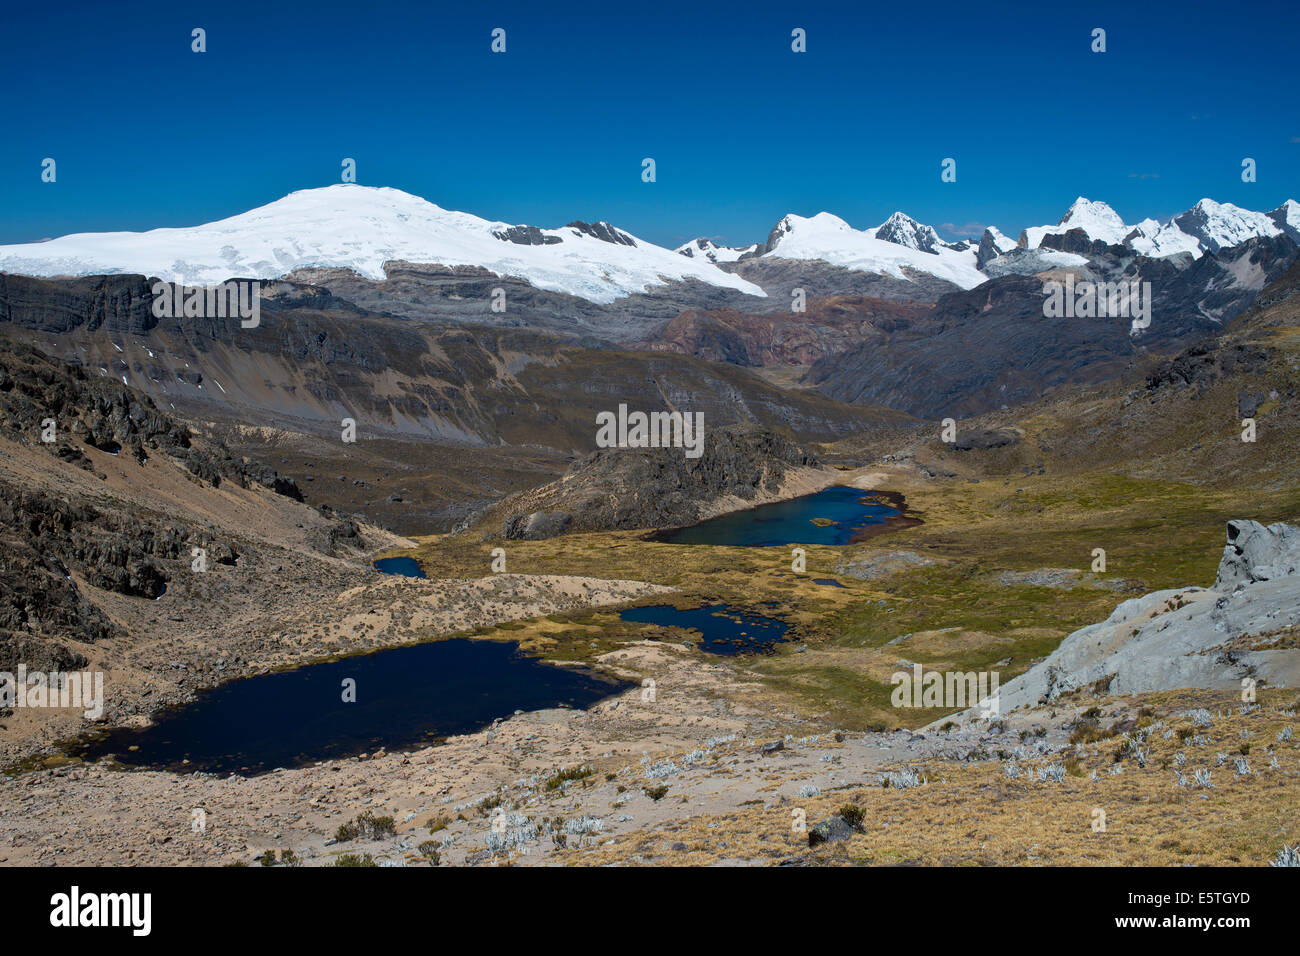 Plusieurs lacs de montagne dans une haute vallée, à l'arrière des montagnes enneigées de la Cordillère Raura range, au nord du Pérou, Pérou Banque D'Images